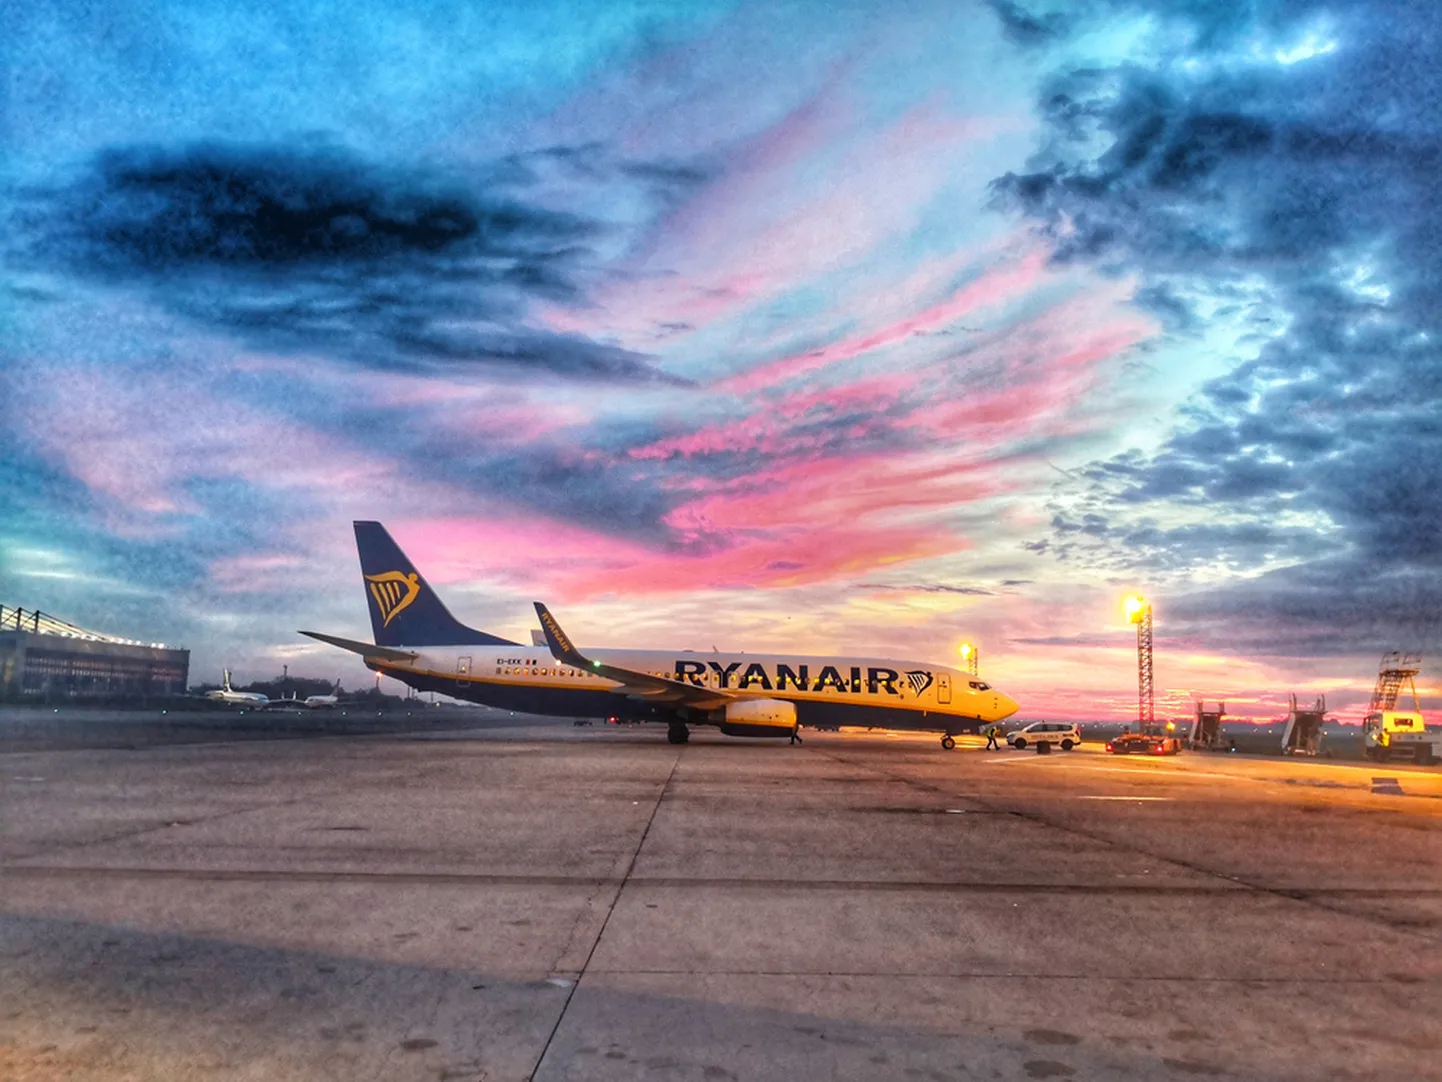 Недорогие рейсы авиакомпании Ryanair из Таллинна уходят в закат